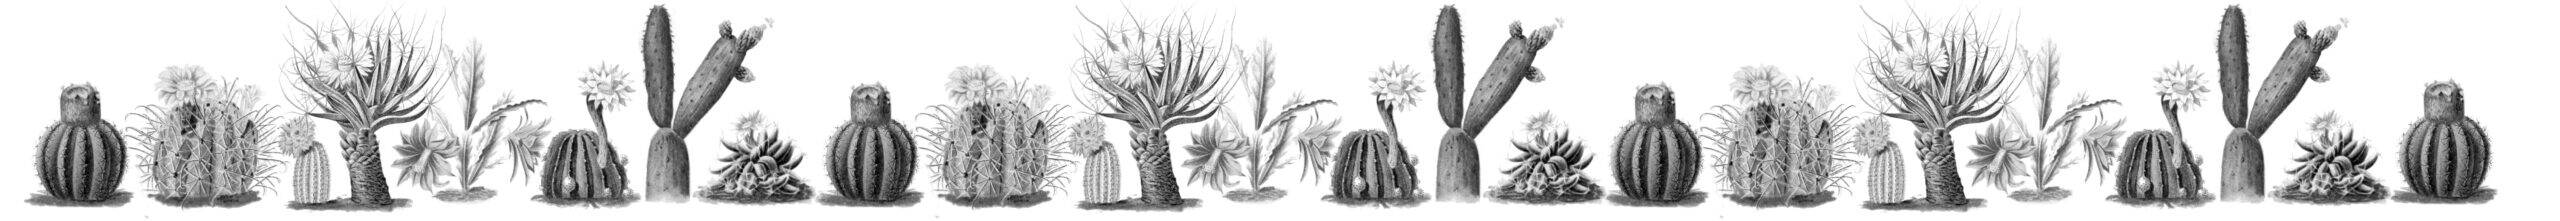 Piante grasse cactus spine